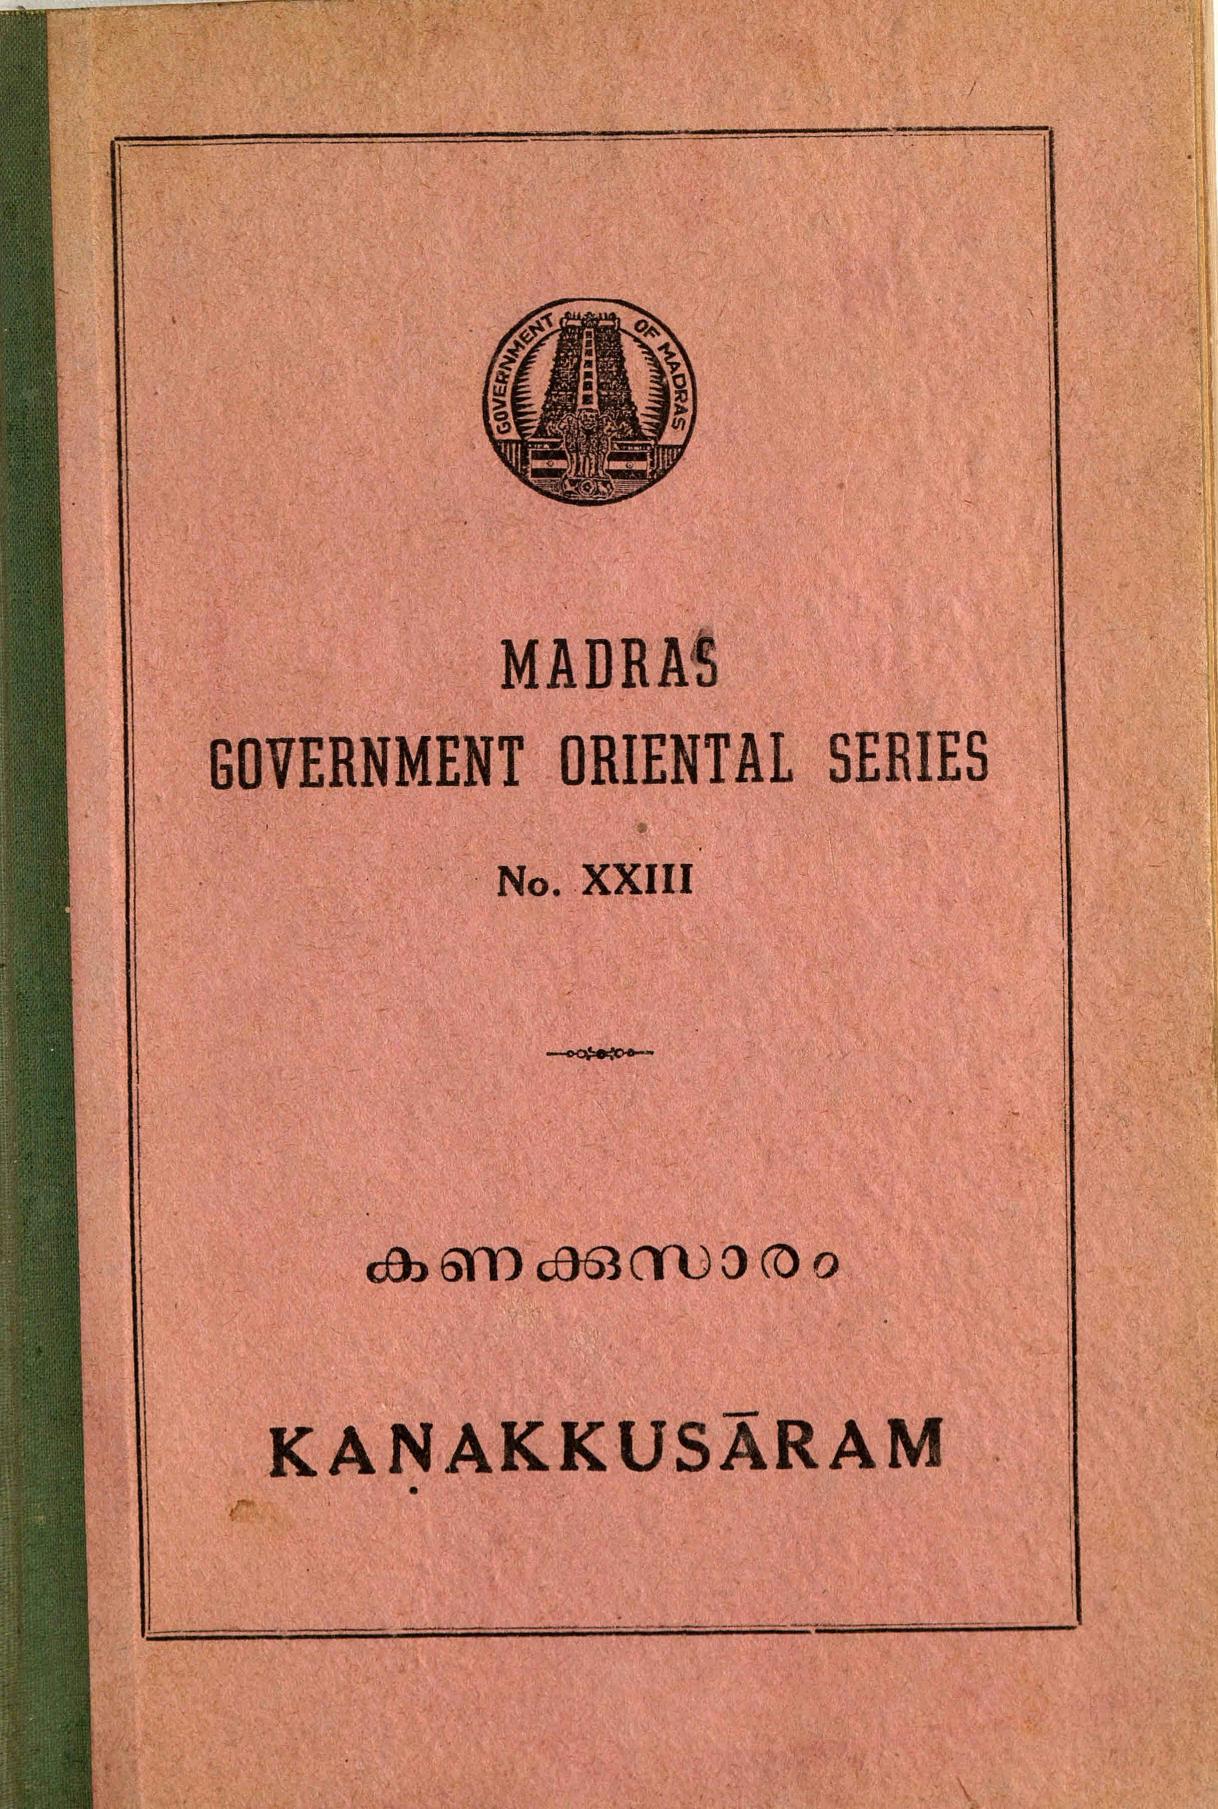  1950 - കണക്കുസാരം - സി. അച്യുത മേനോൻ